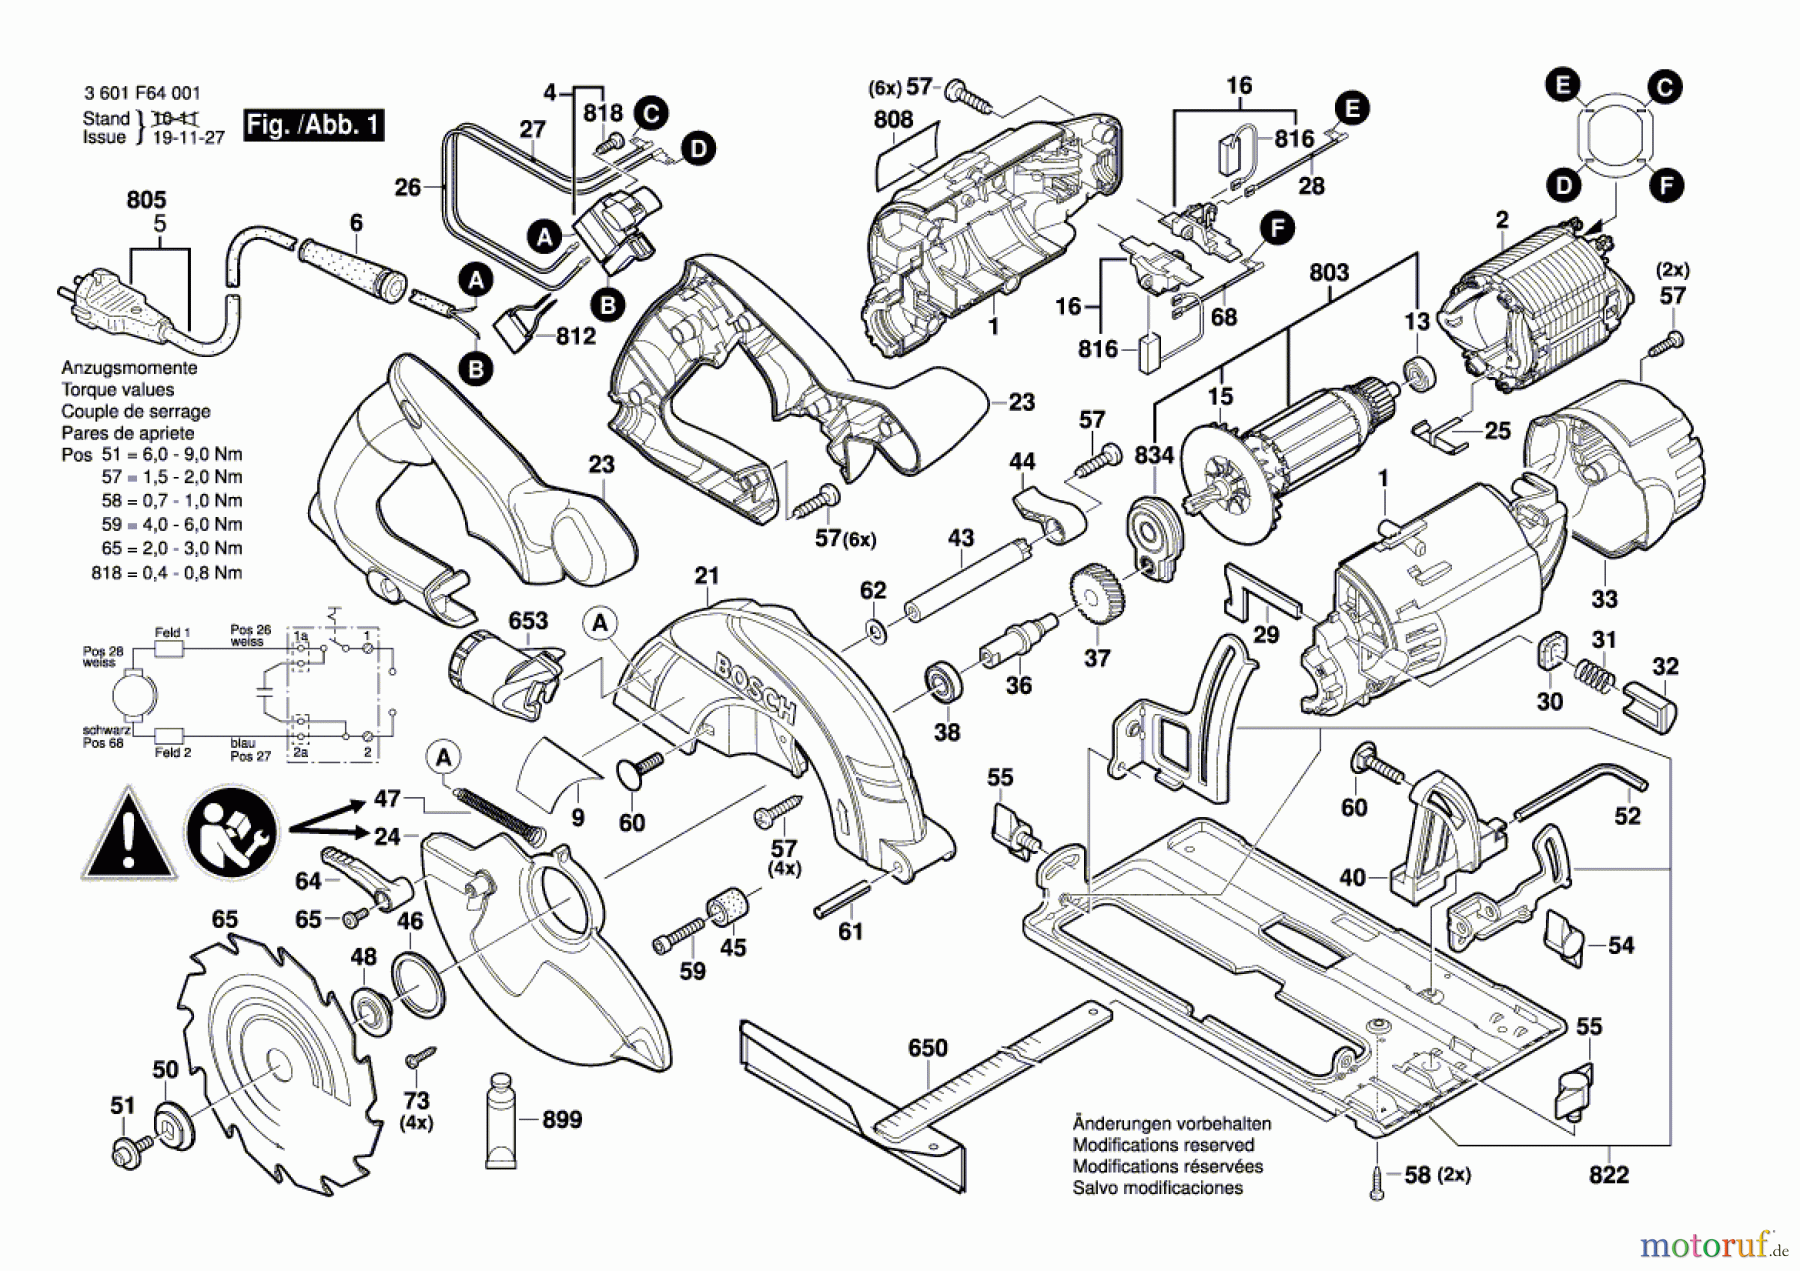  Bosch Werkzeug Handkreissäge GKS 55 Seite 1